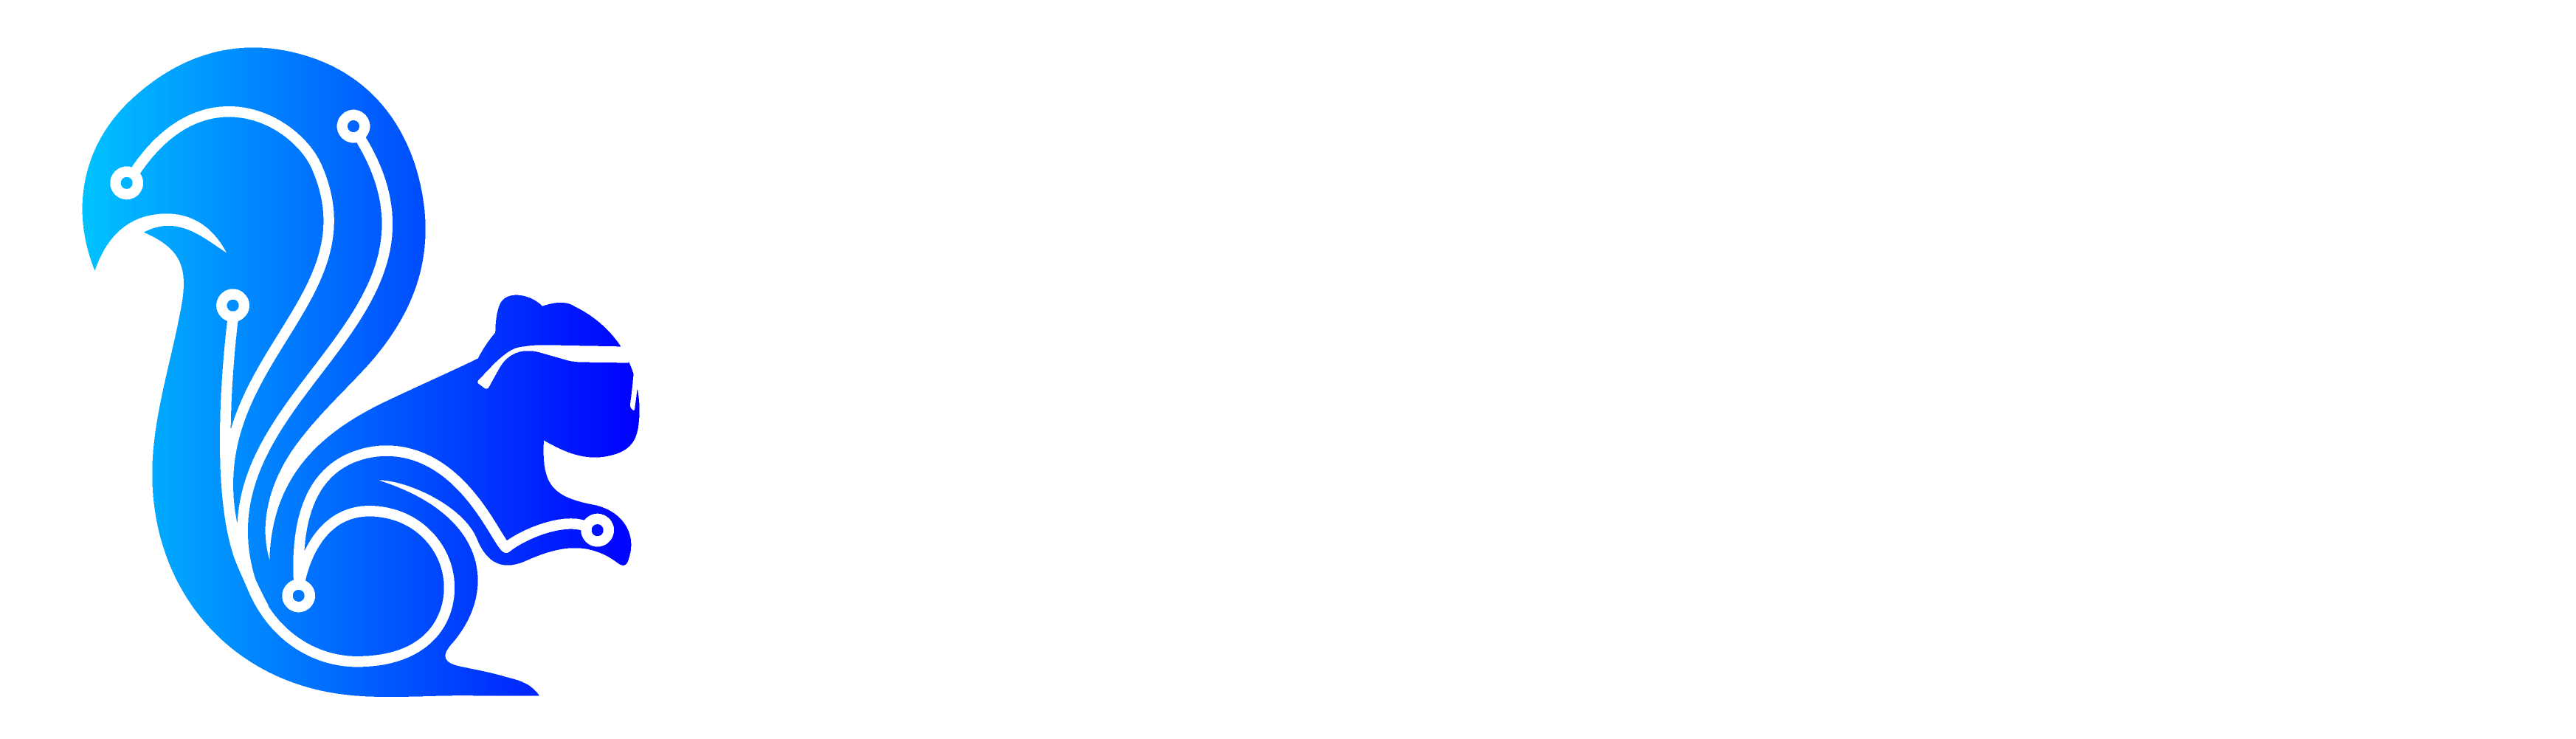 Digital Chipmunks